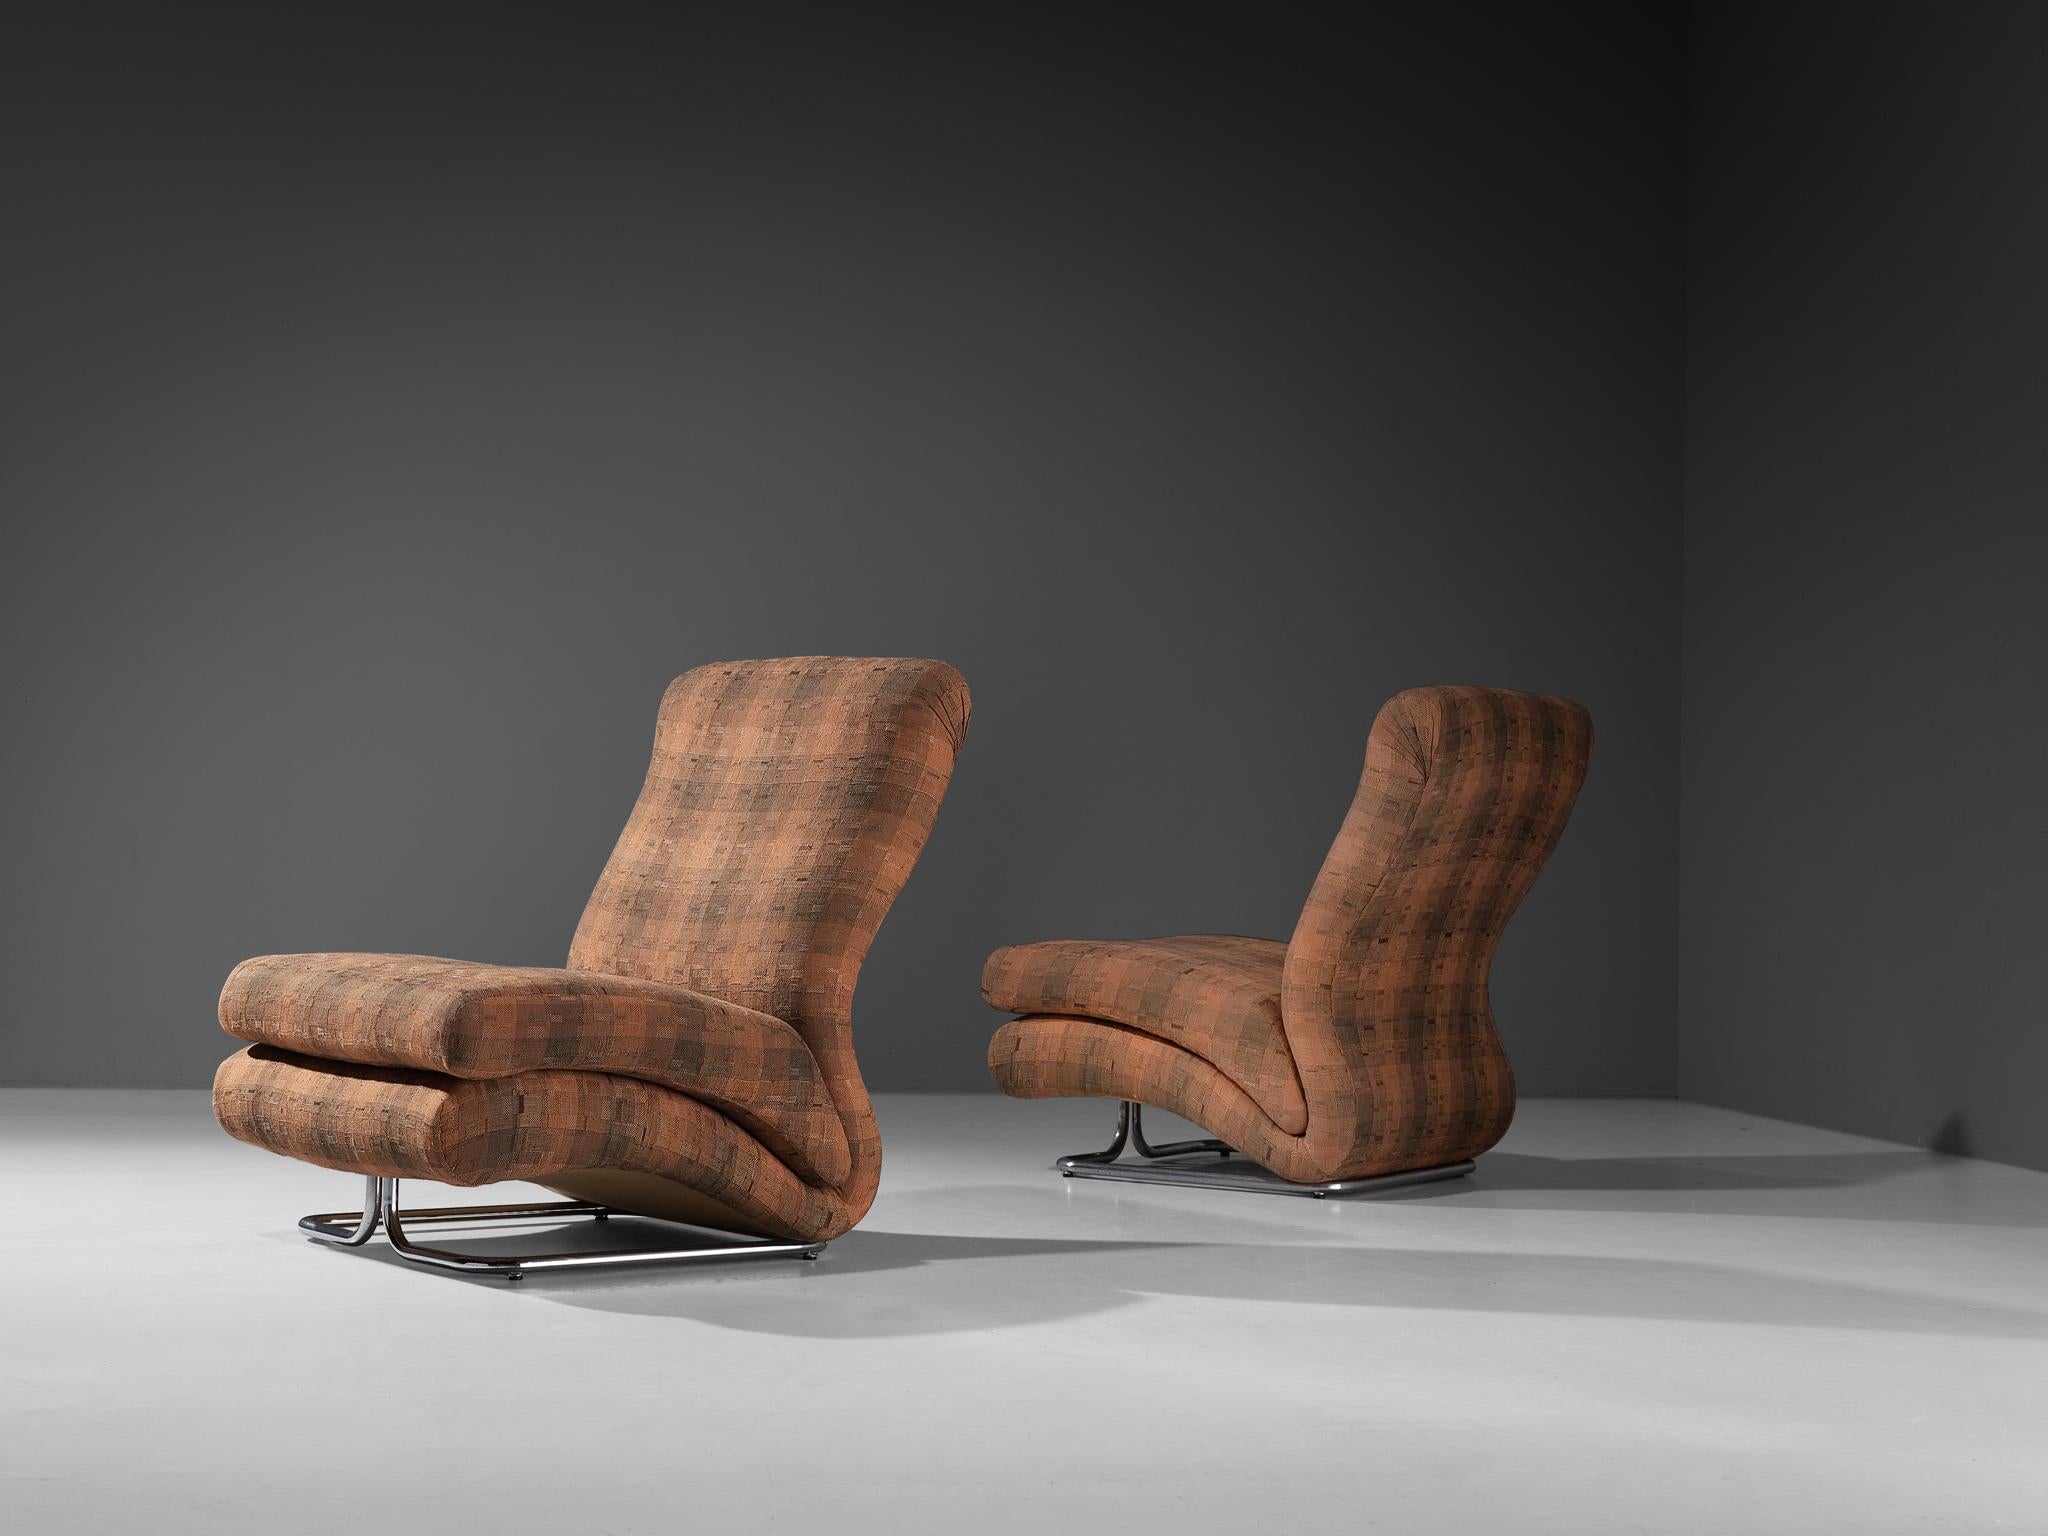 Vittorio Varo pour I+I, paire de chaises longues modèle 'Cigno', tissu, métal chromé, Italie, 1968. 

Le designer italien Vittorio Varo a créé un design saisissant qui ajoute une allure vibrante à votre pièce et intensifie l'expérience de la détente